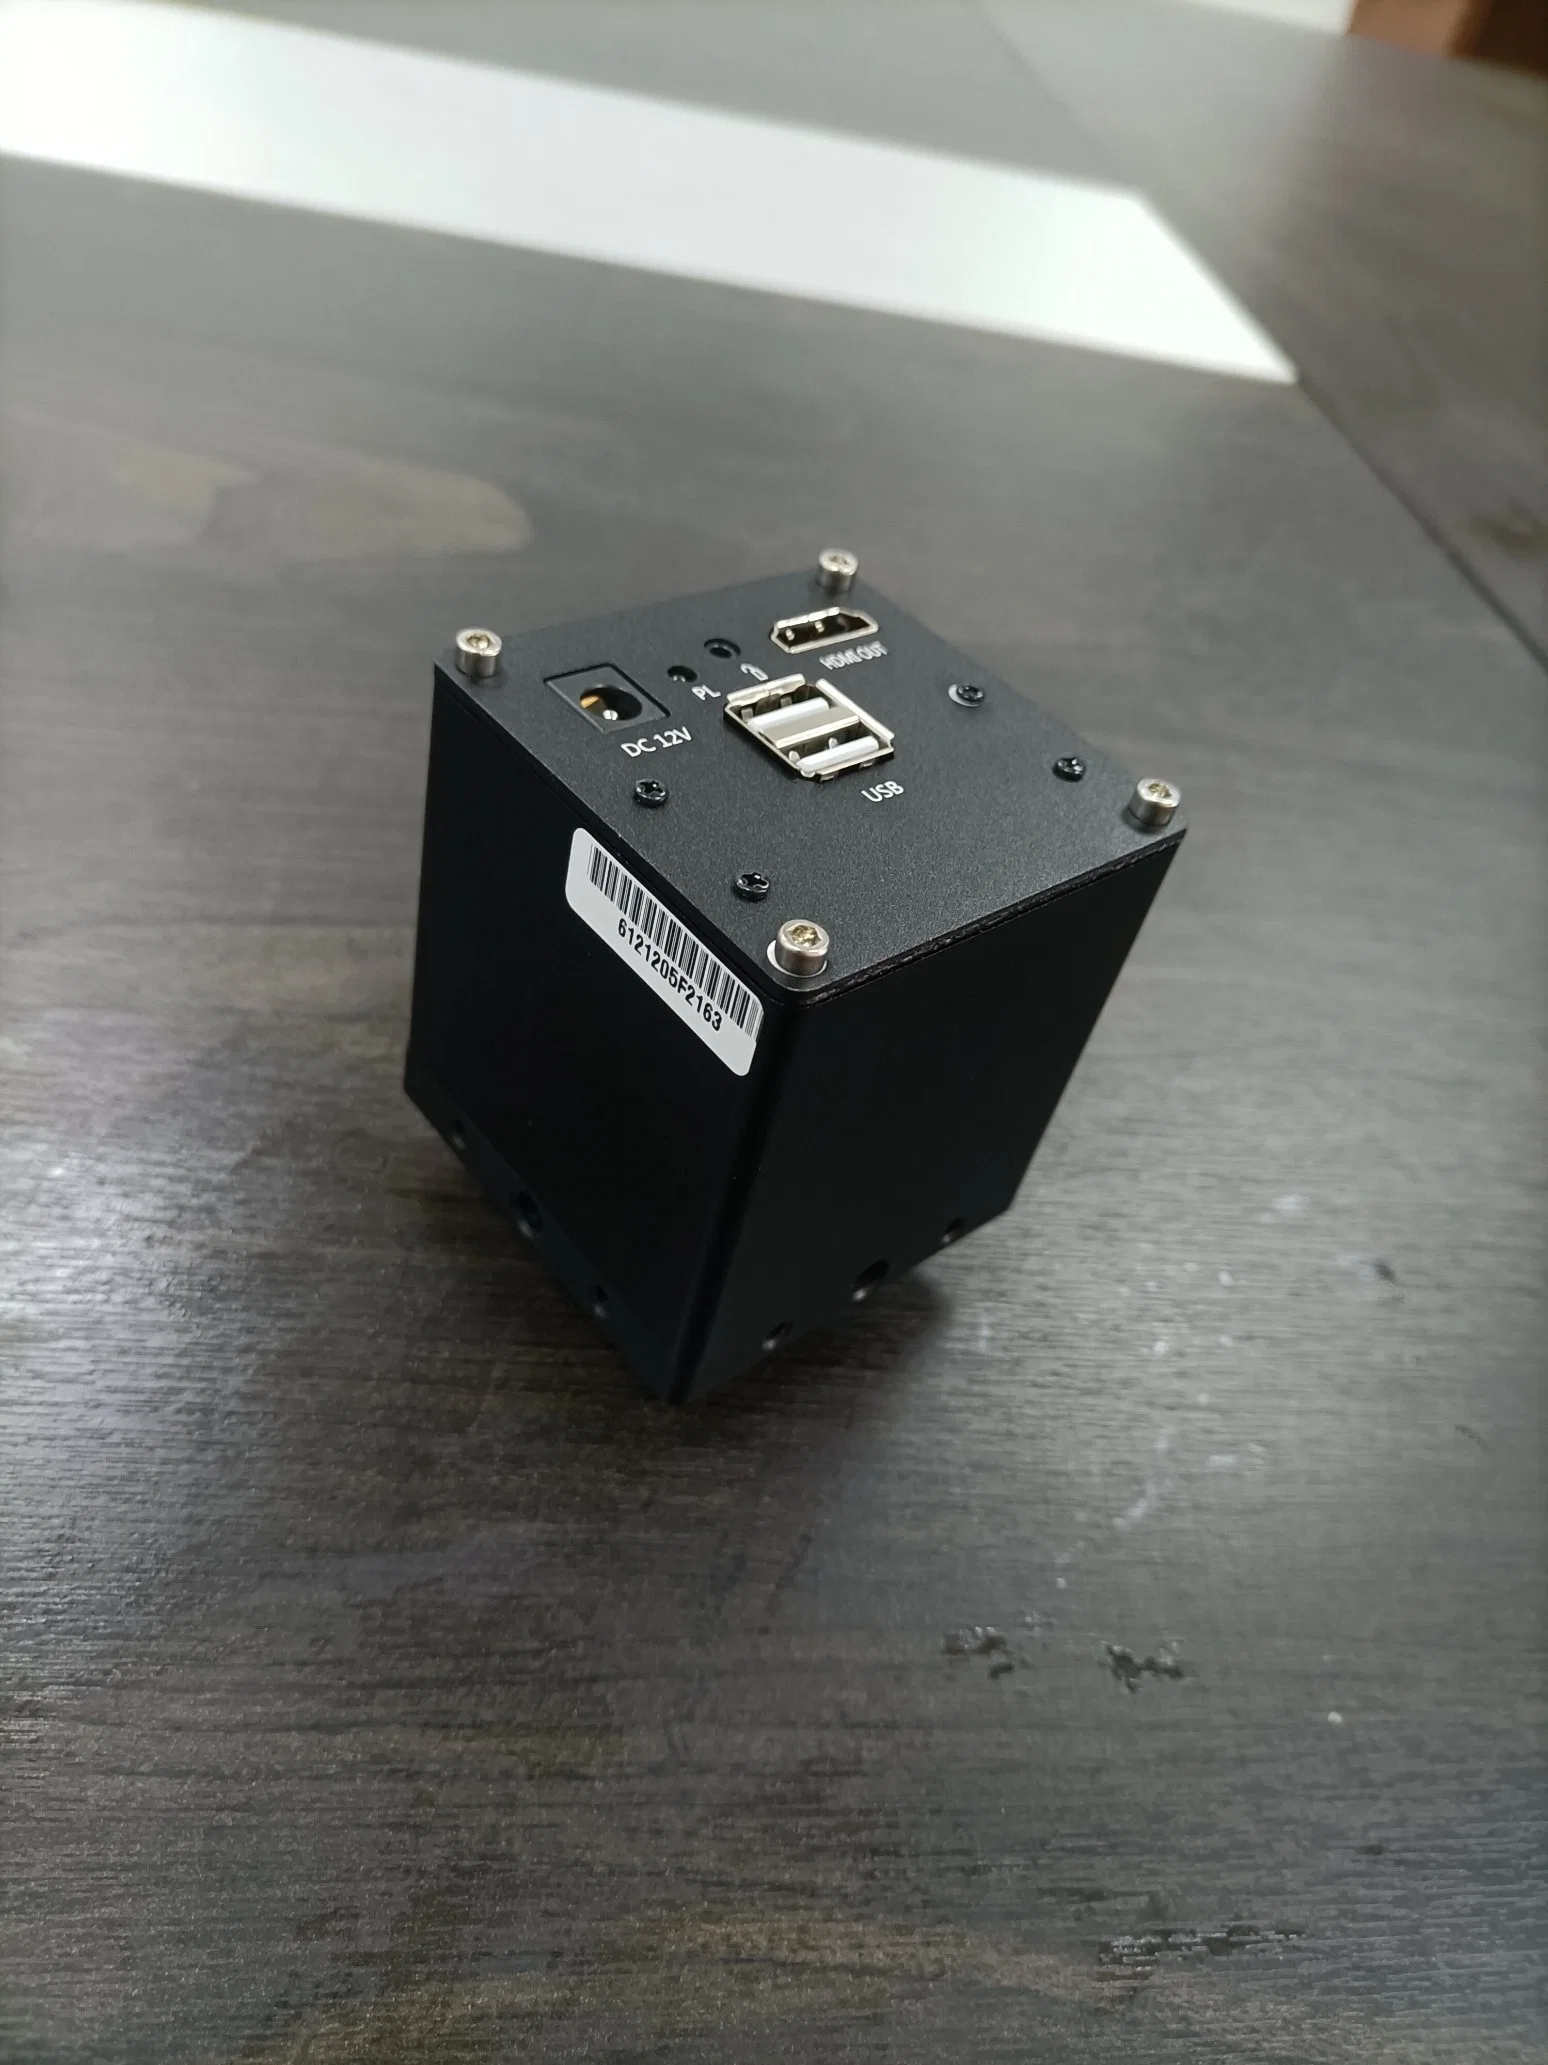 Промышленная видеокамера HD Electron Microscope для ремонта мобильных телефонов Измерение с помощью контрольной фотографии